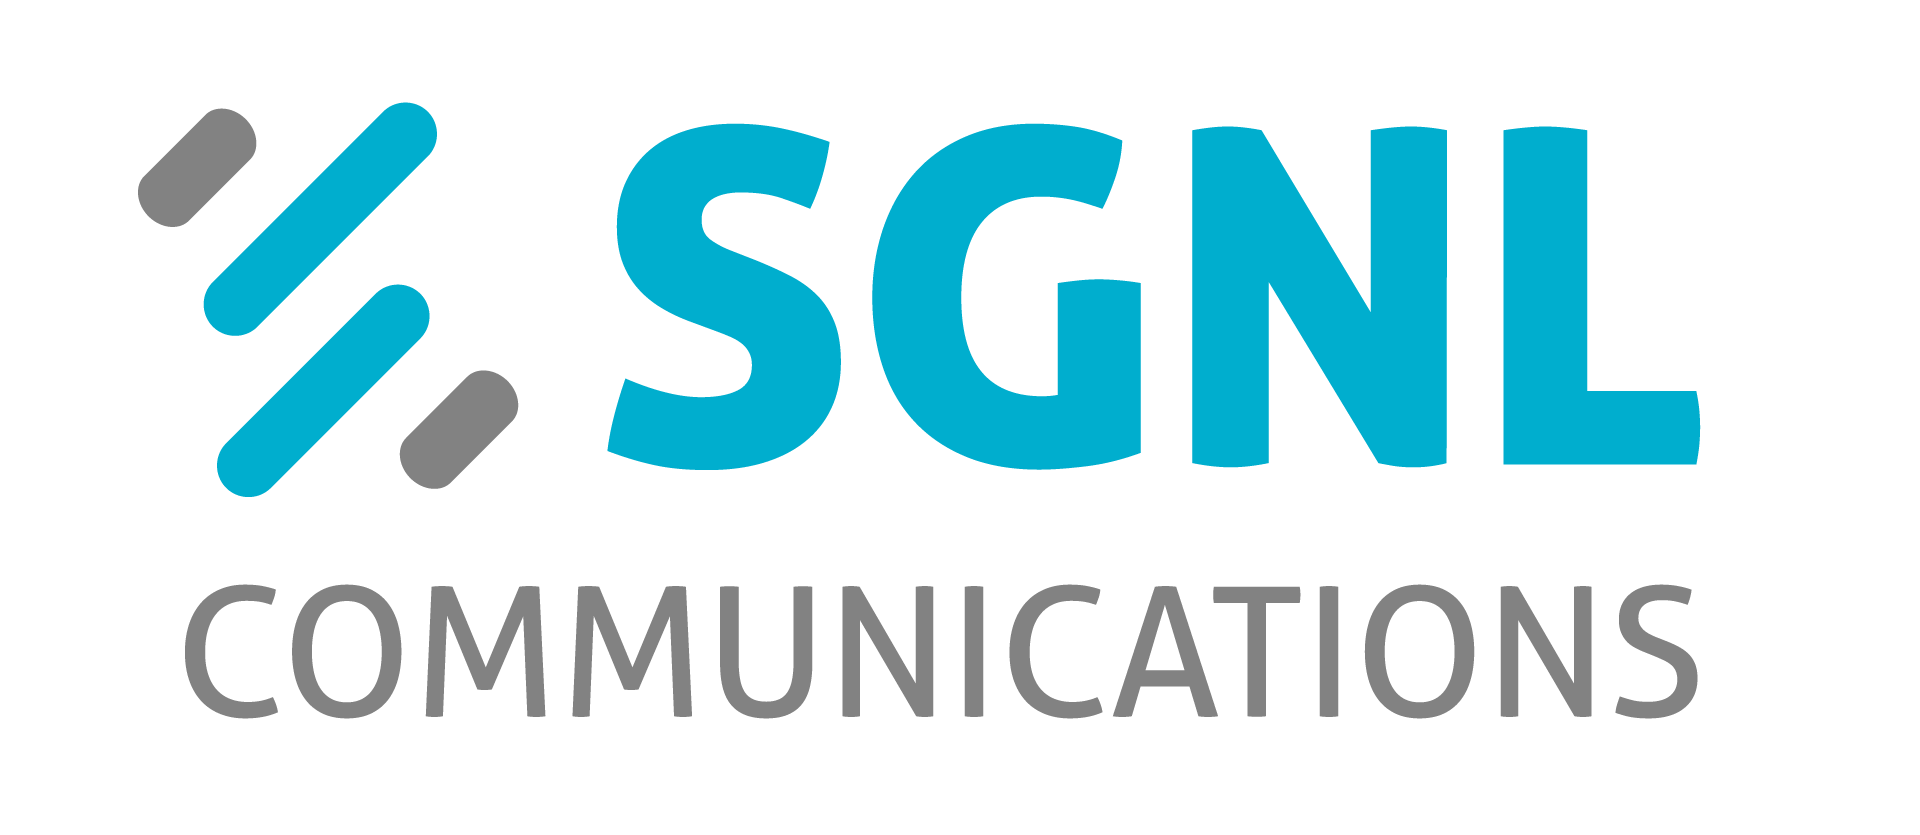 SGNL Communications